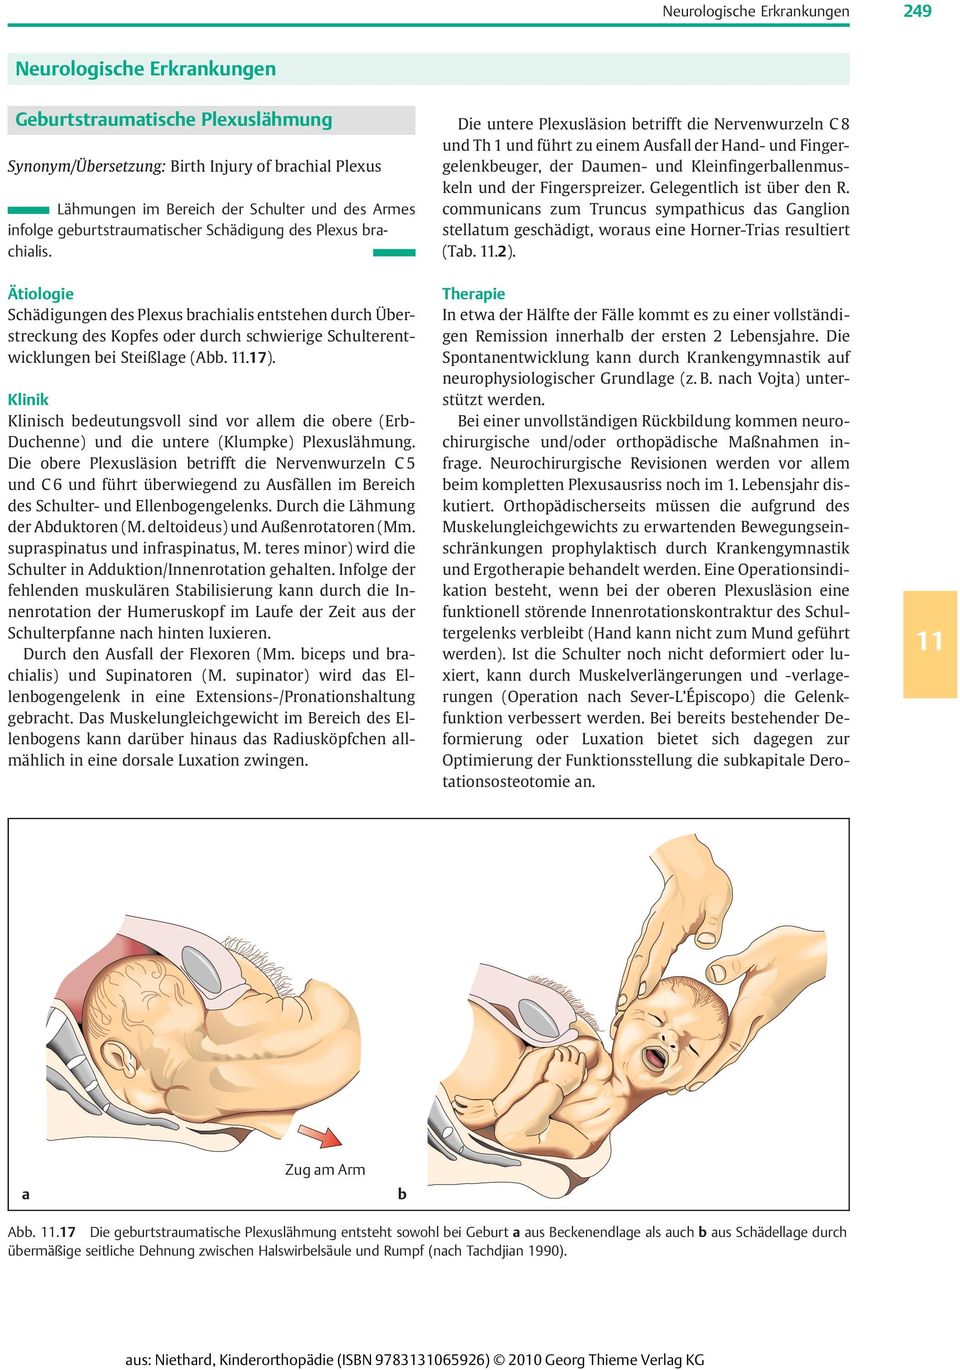 Ätiologie Schädigungen des Plexus brachialis entstehen durch Überstreckung des Kopfes oder durch schwierige Schulterentwicklungen bei Steißlage (Abb. 11.17).